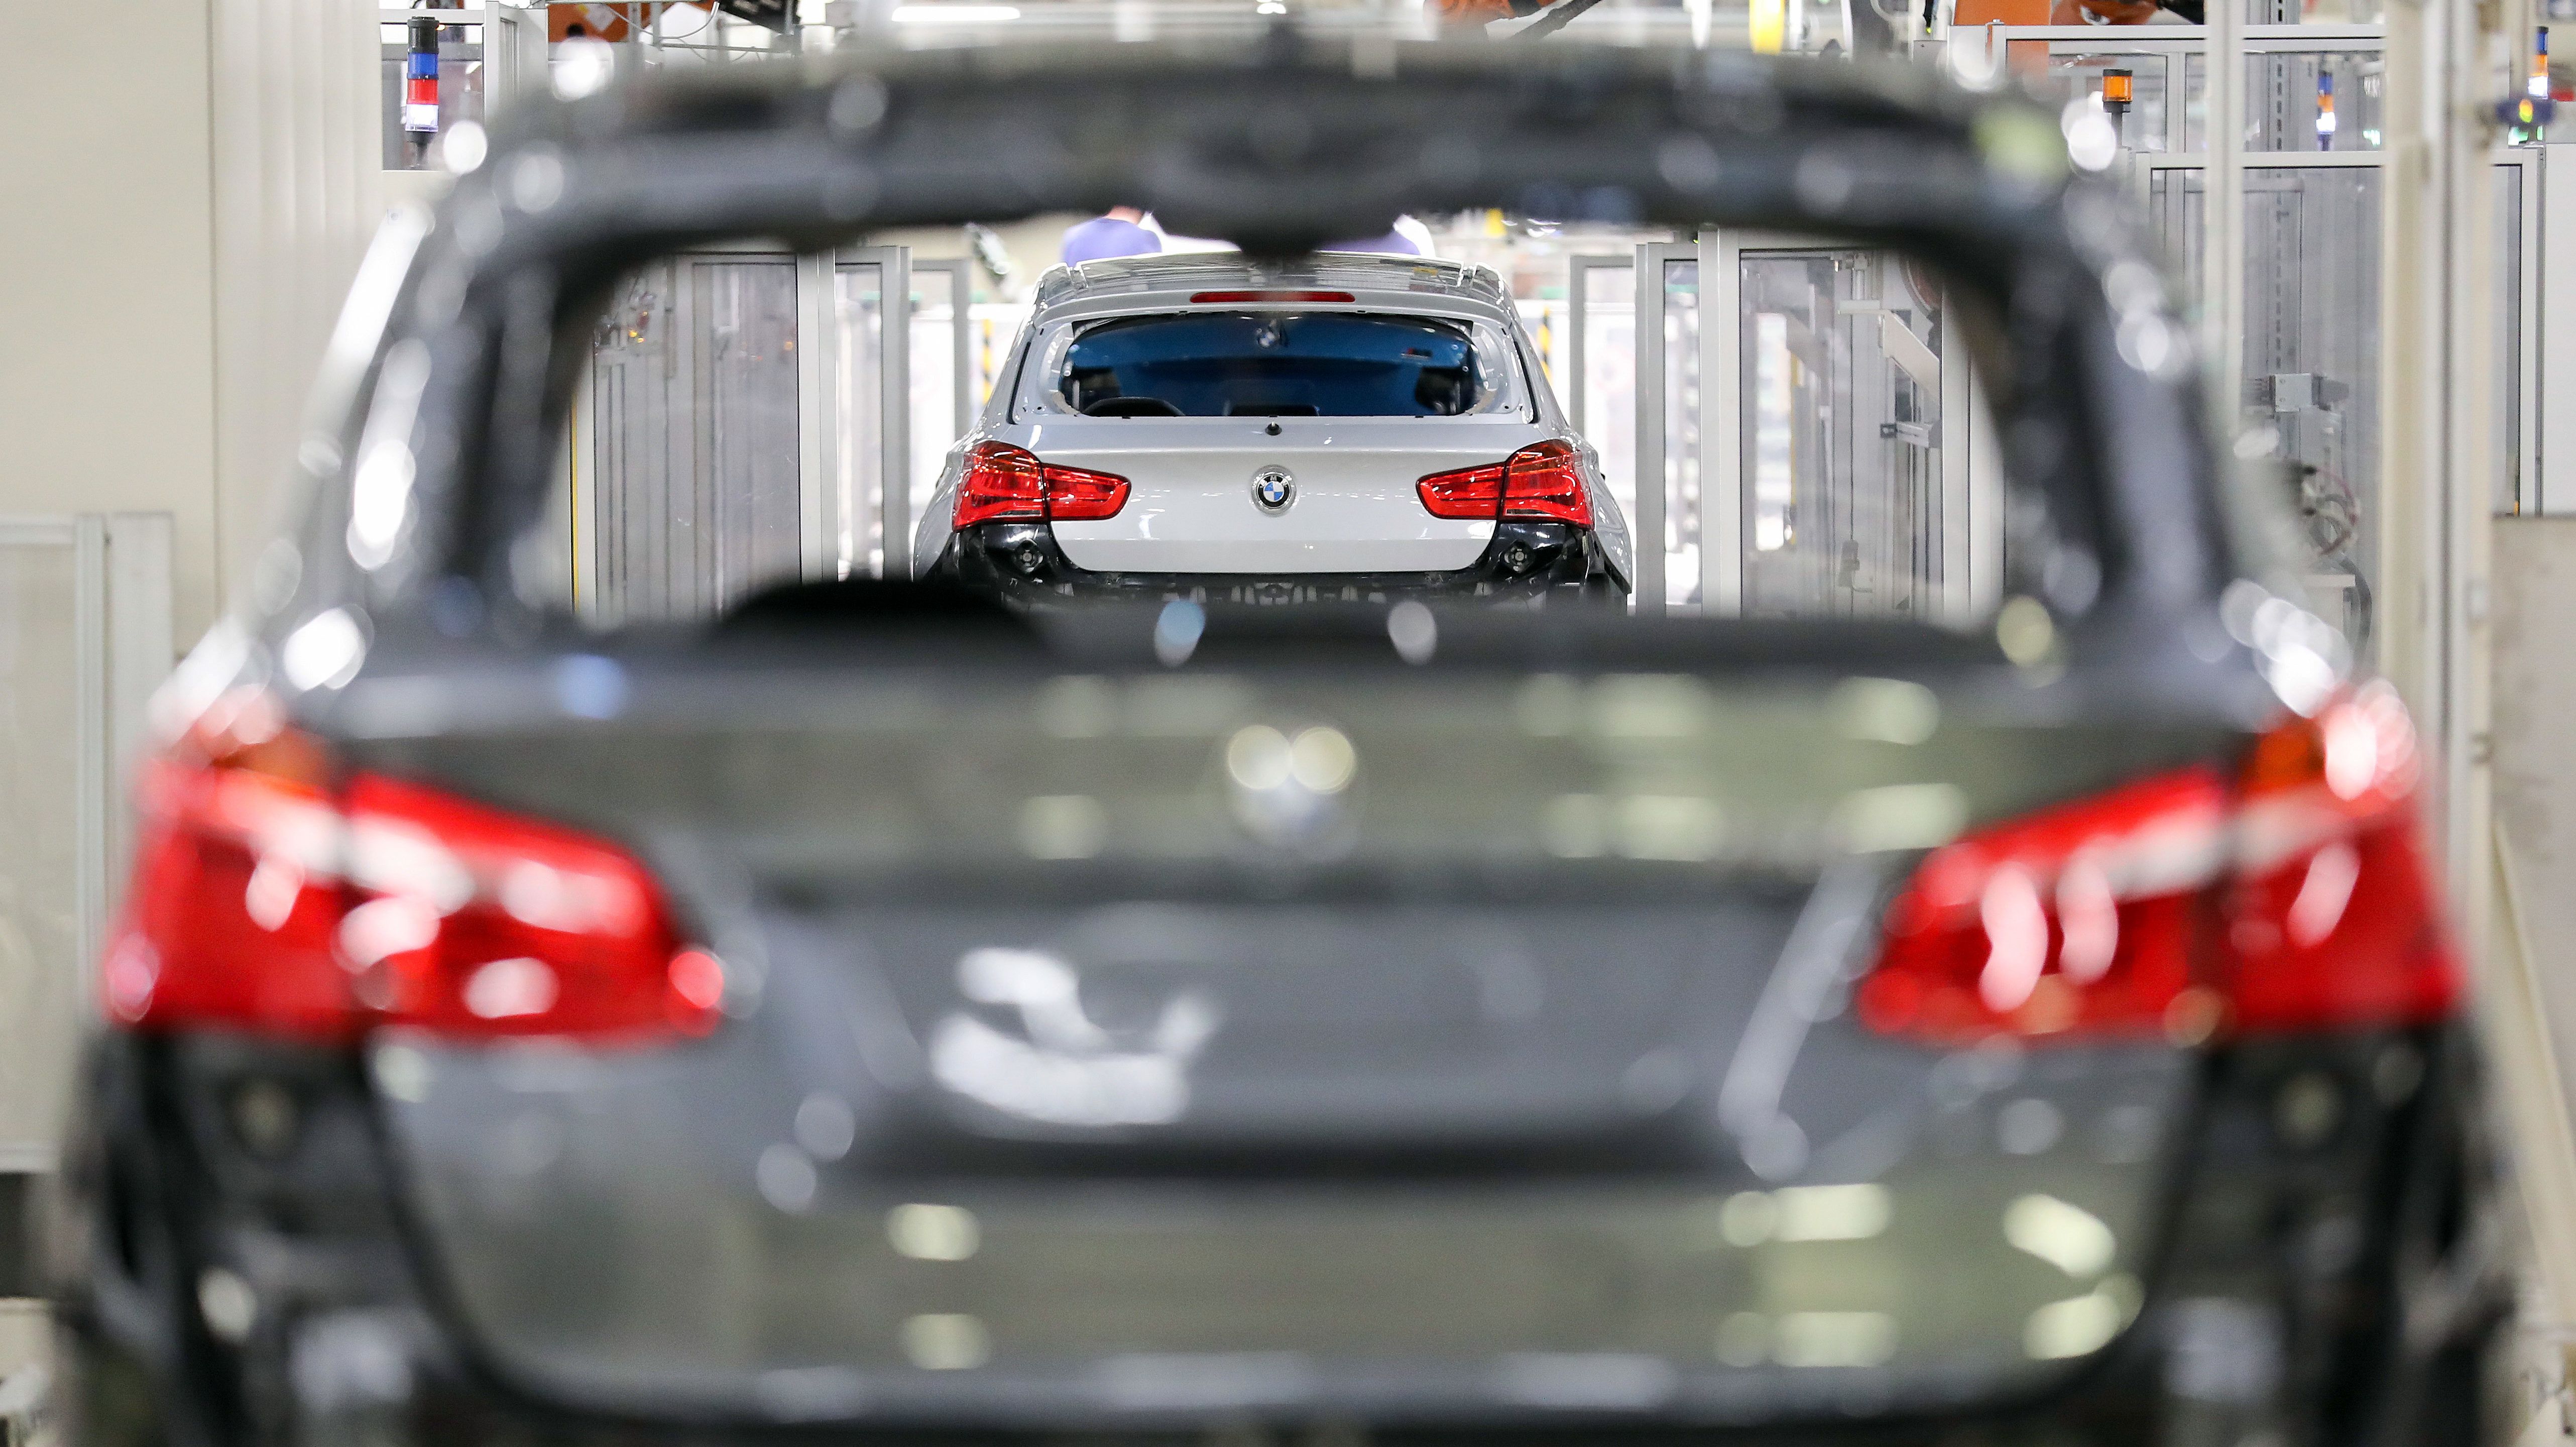 Nem kommentálja a debreceni gyárat is érintő médiaspekulációt a BMW